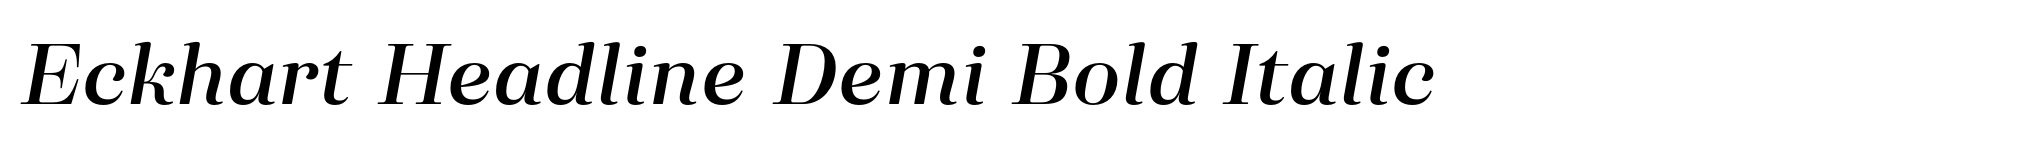 Eckhart Headline Demi Bold Italic image